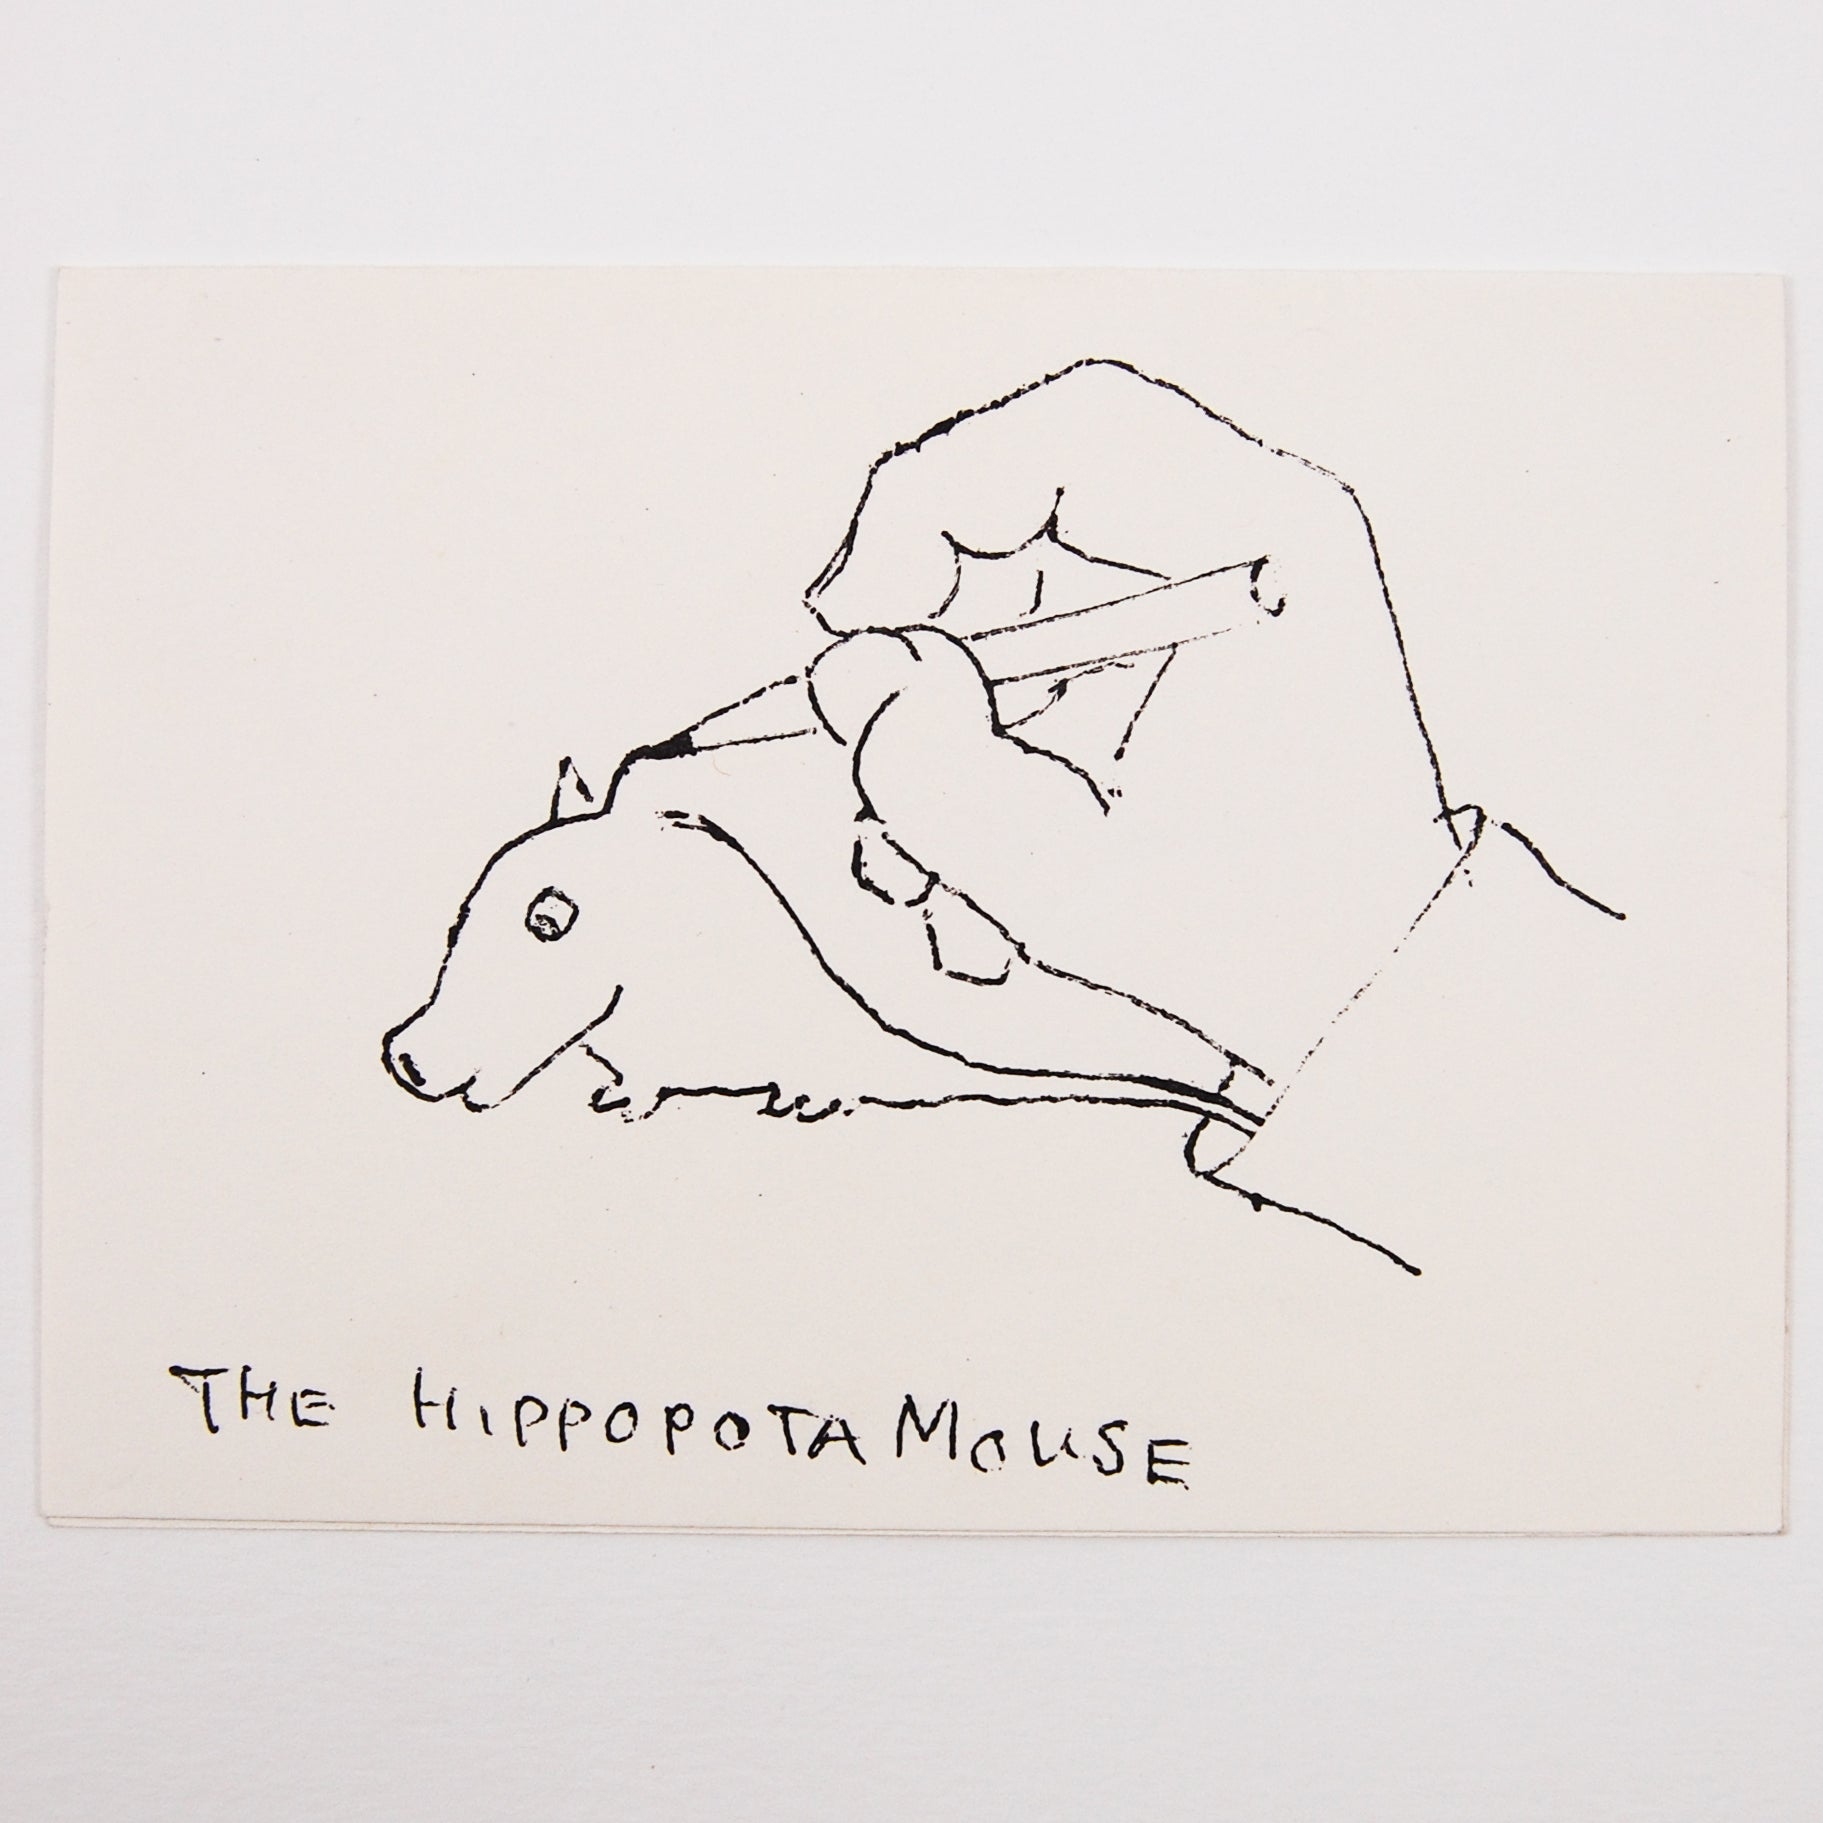 Otto Robert Frisch's Hippopotamouse